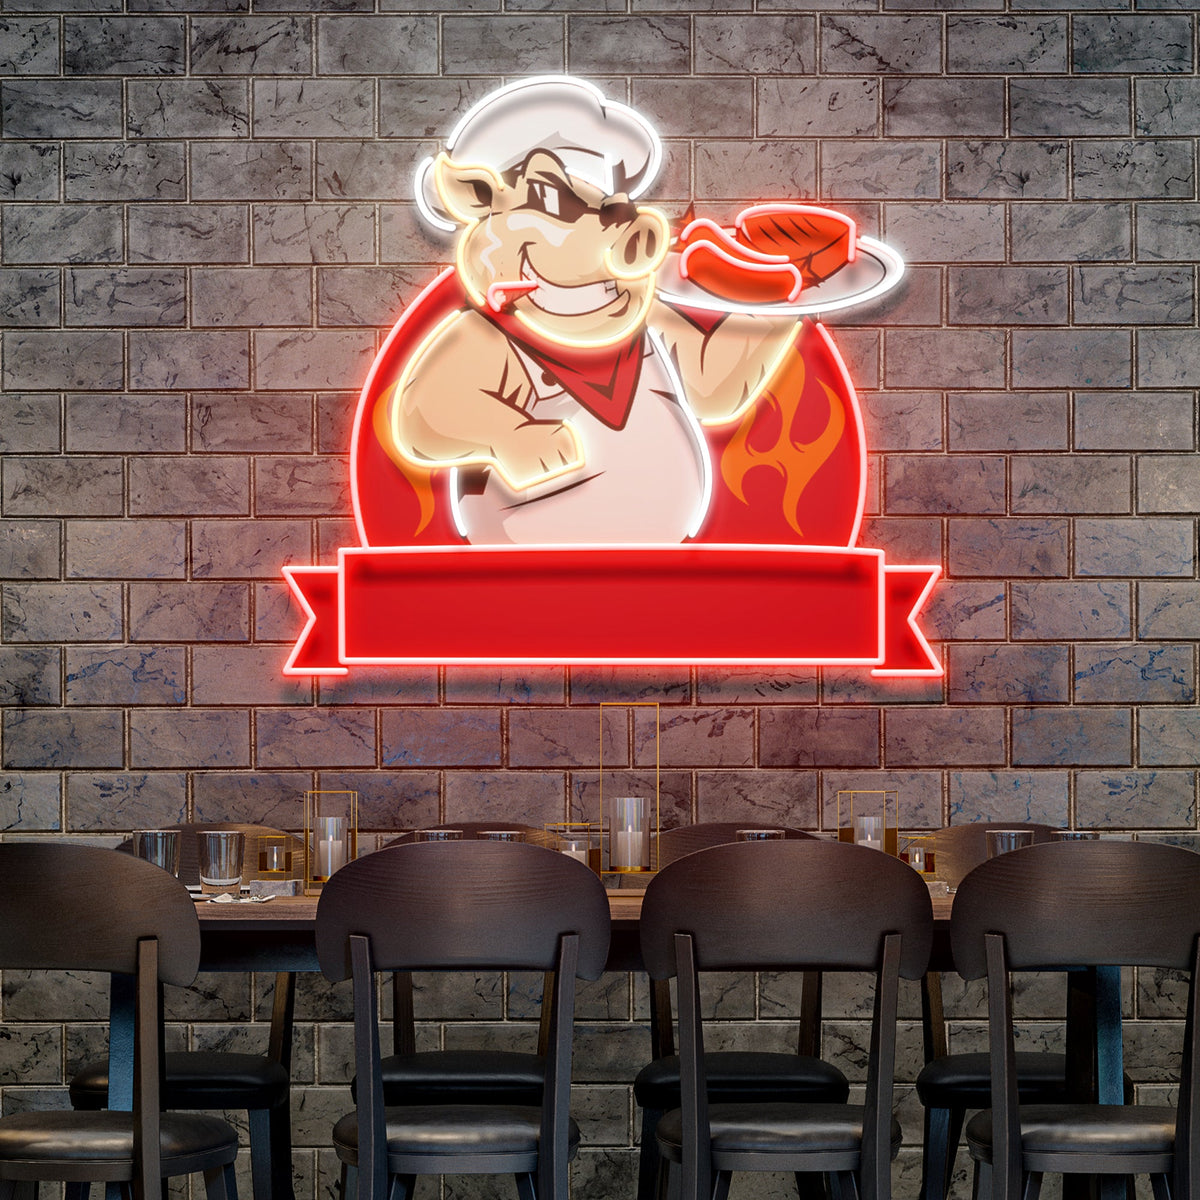 Custom Name Pig Chef BBQ Artwork Led Neon Sign Light